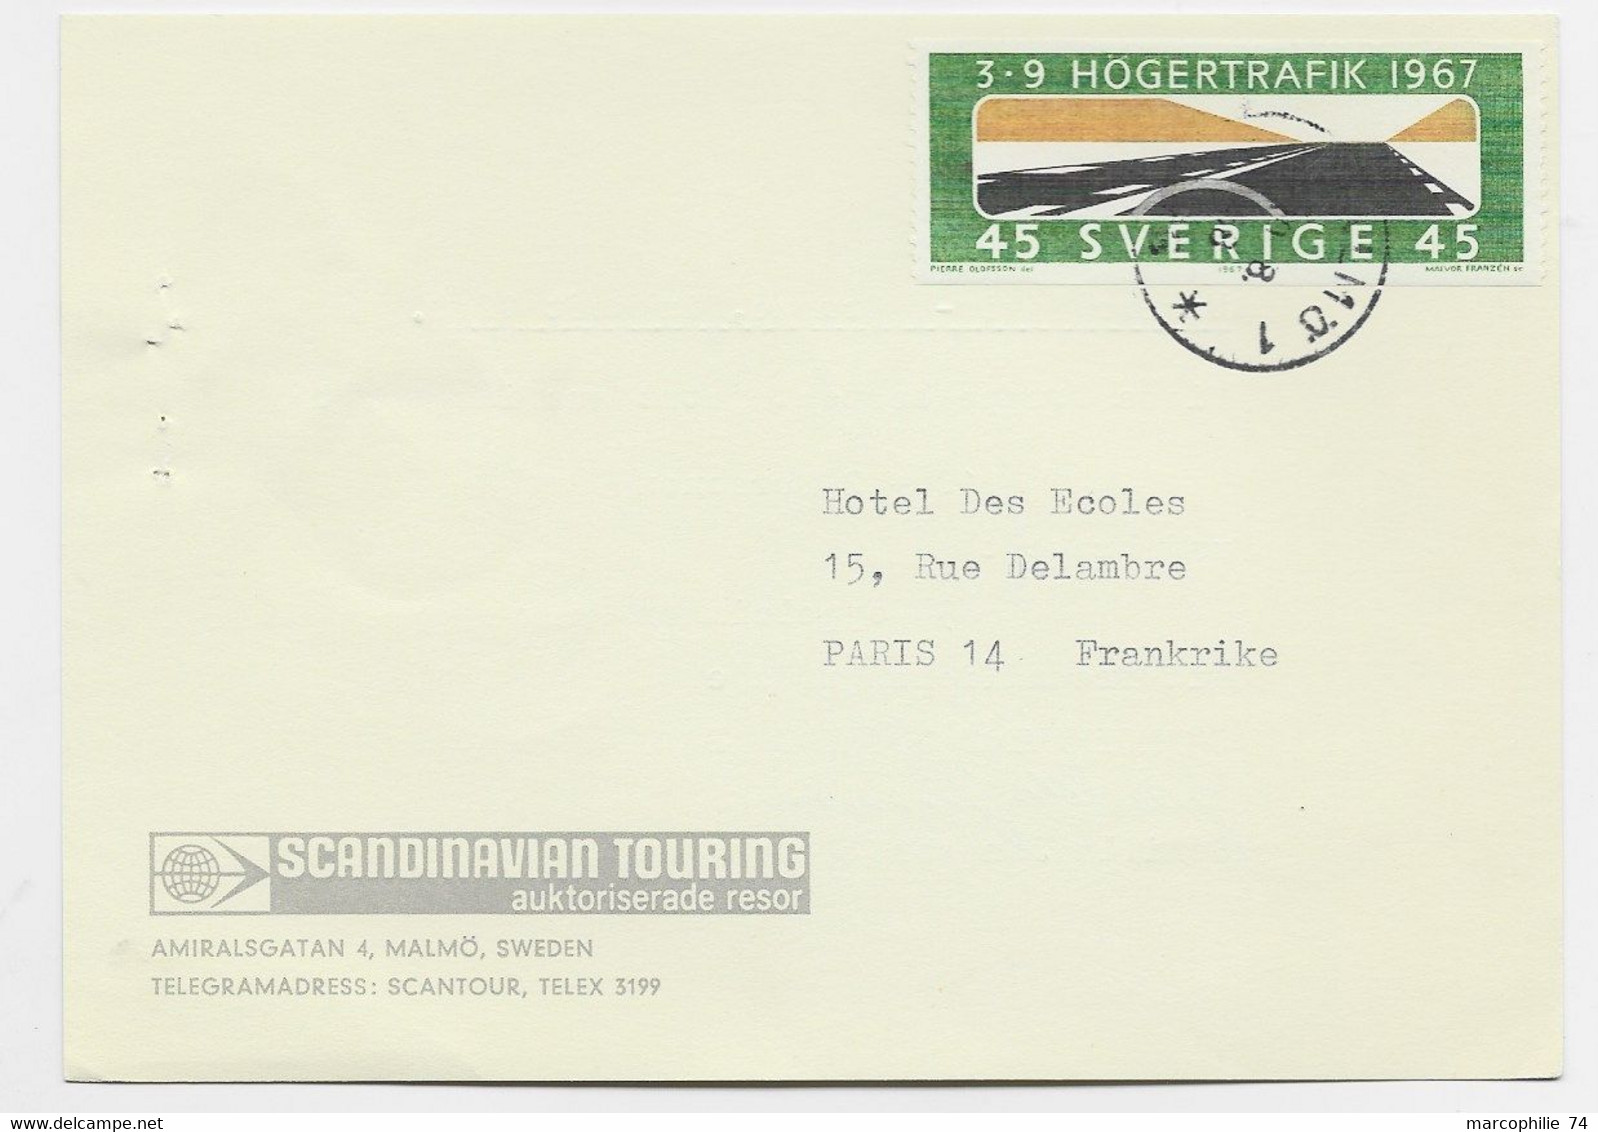 SVERIGE 45 SOLO CARD SCANDINAVIAN TOURING 1967 O FRANCE - Cartas & Documentos